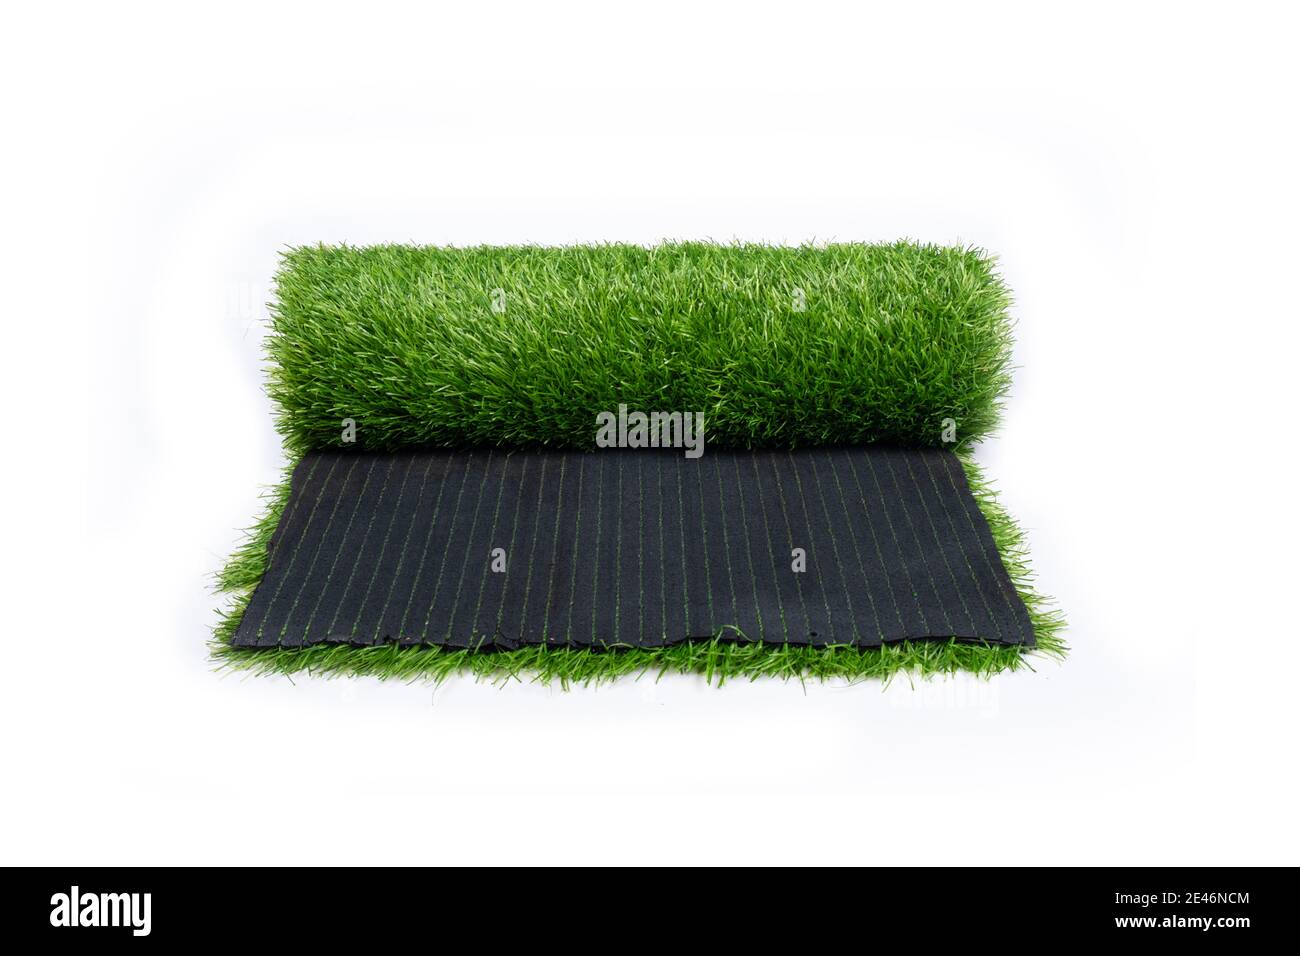 erba verde, rotolo di erba artificiale, rivestimento isolato su sfondo bianco Foto Stock